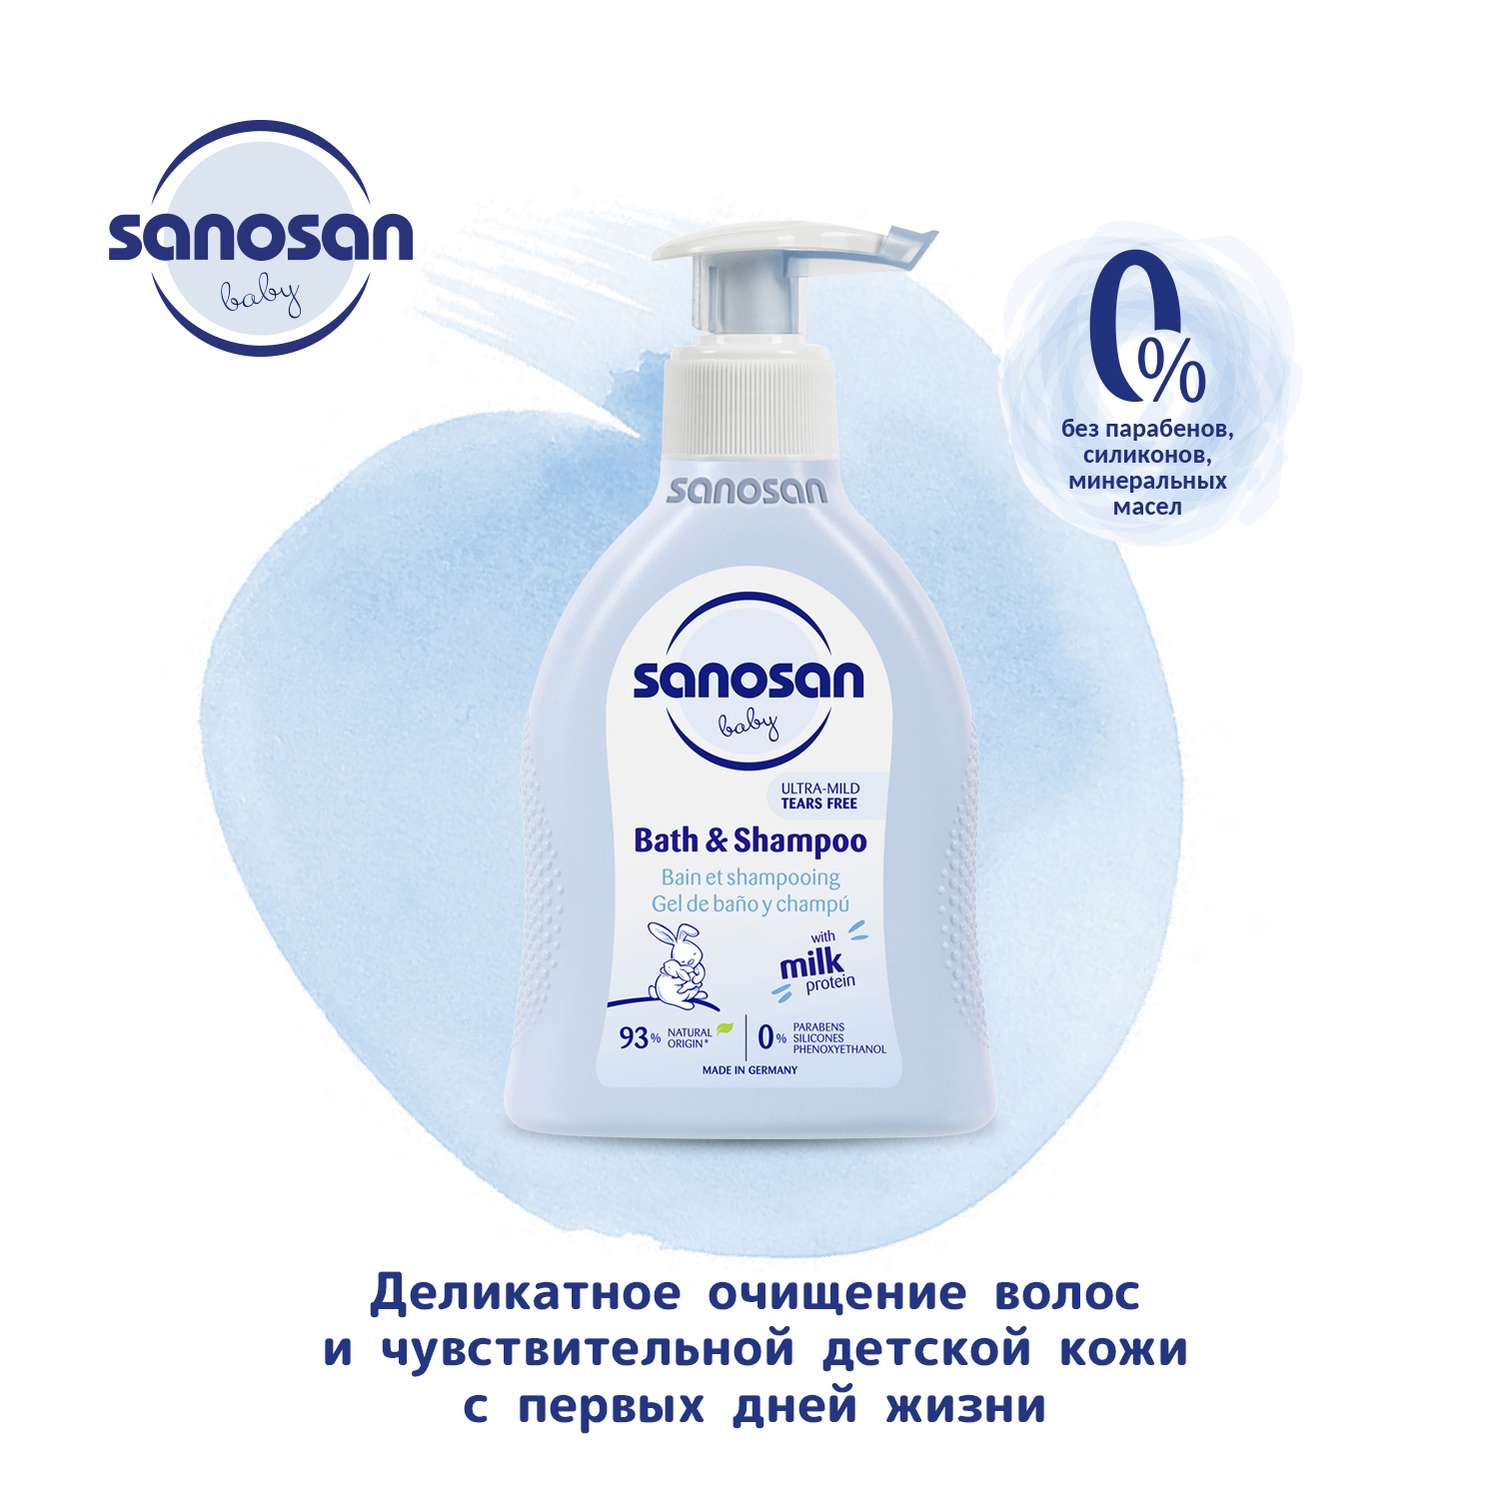 Средство для купания и шампунь. Средство Sanosan 2 в 1, 200 мл. Sanosan мыло. Sanosan Baby средство для купания и шампунь.